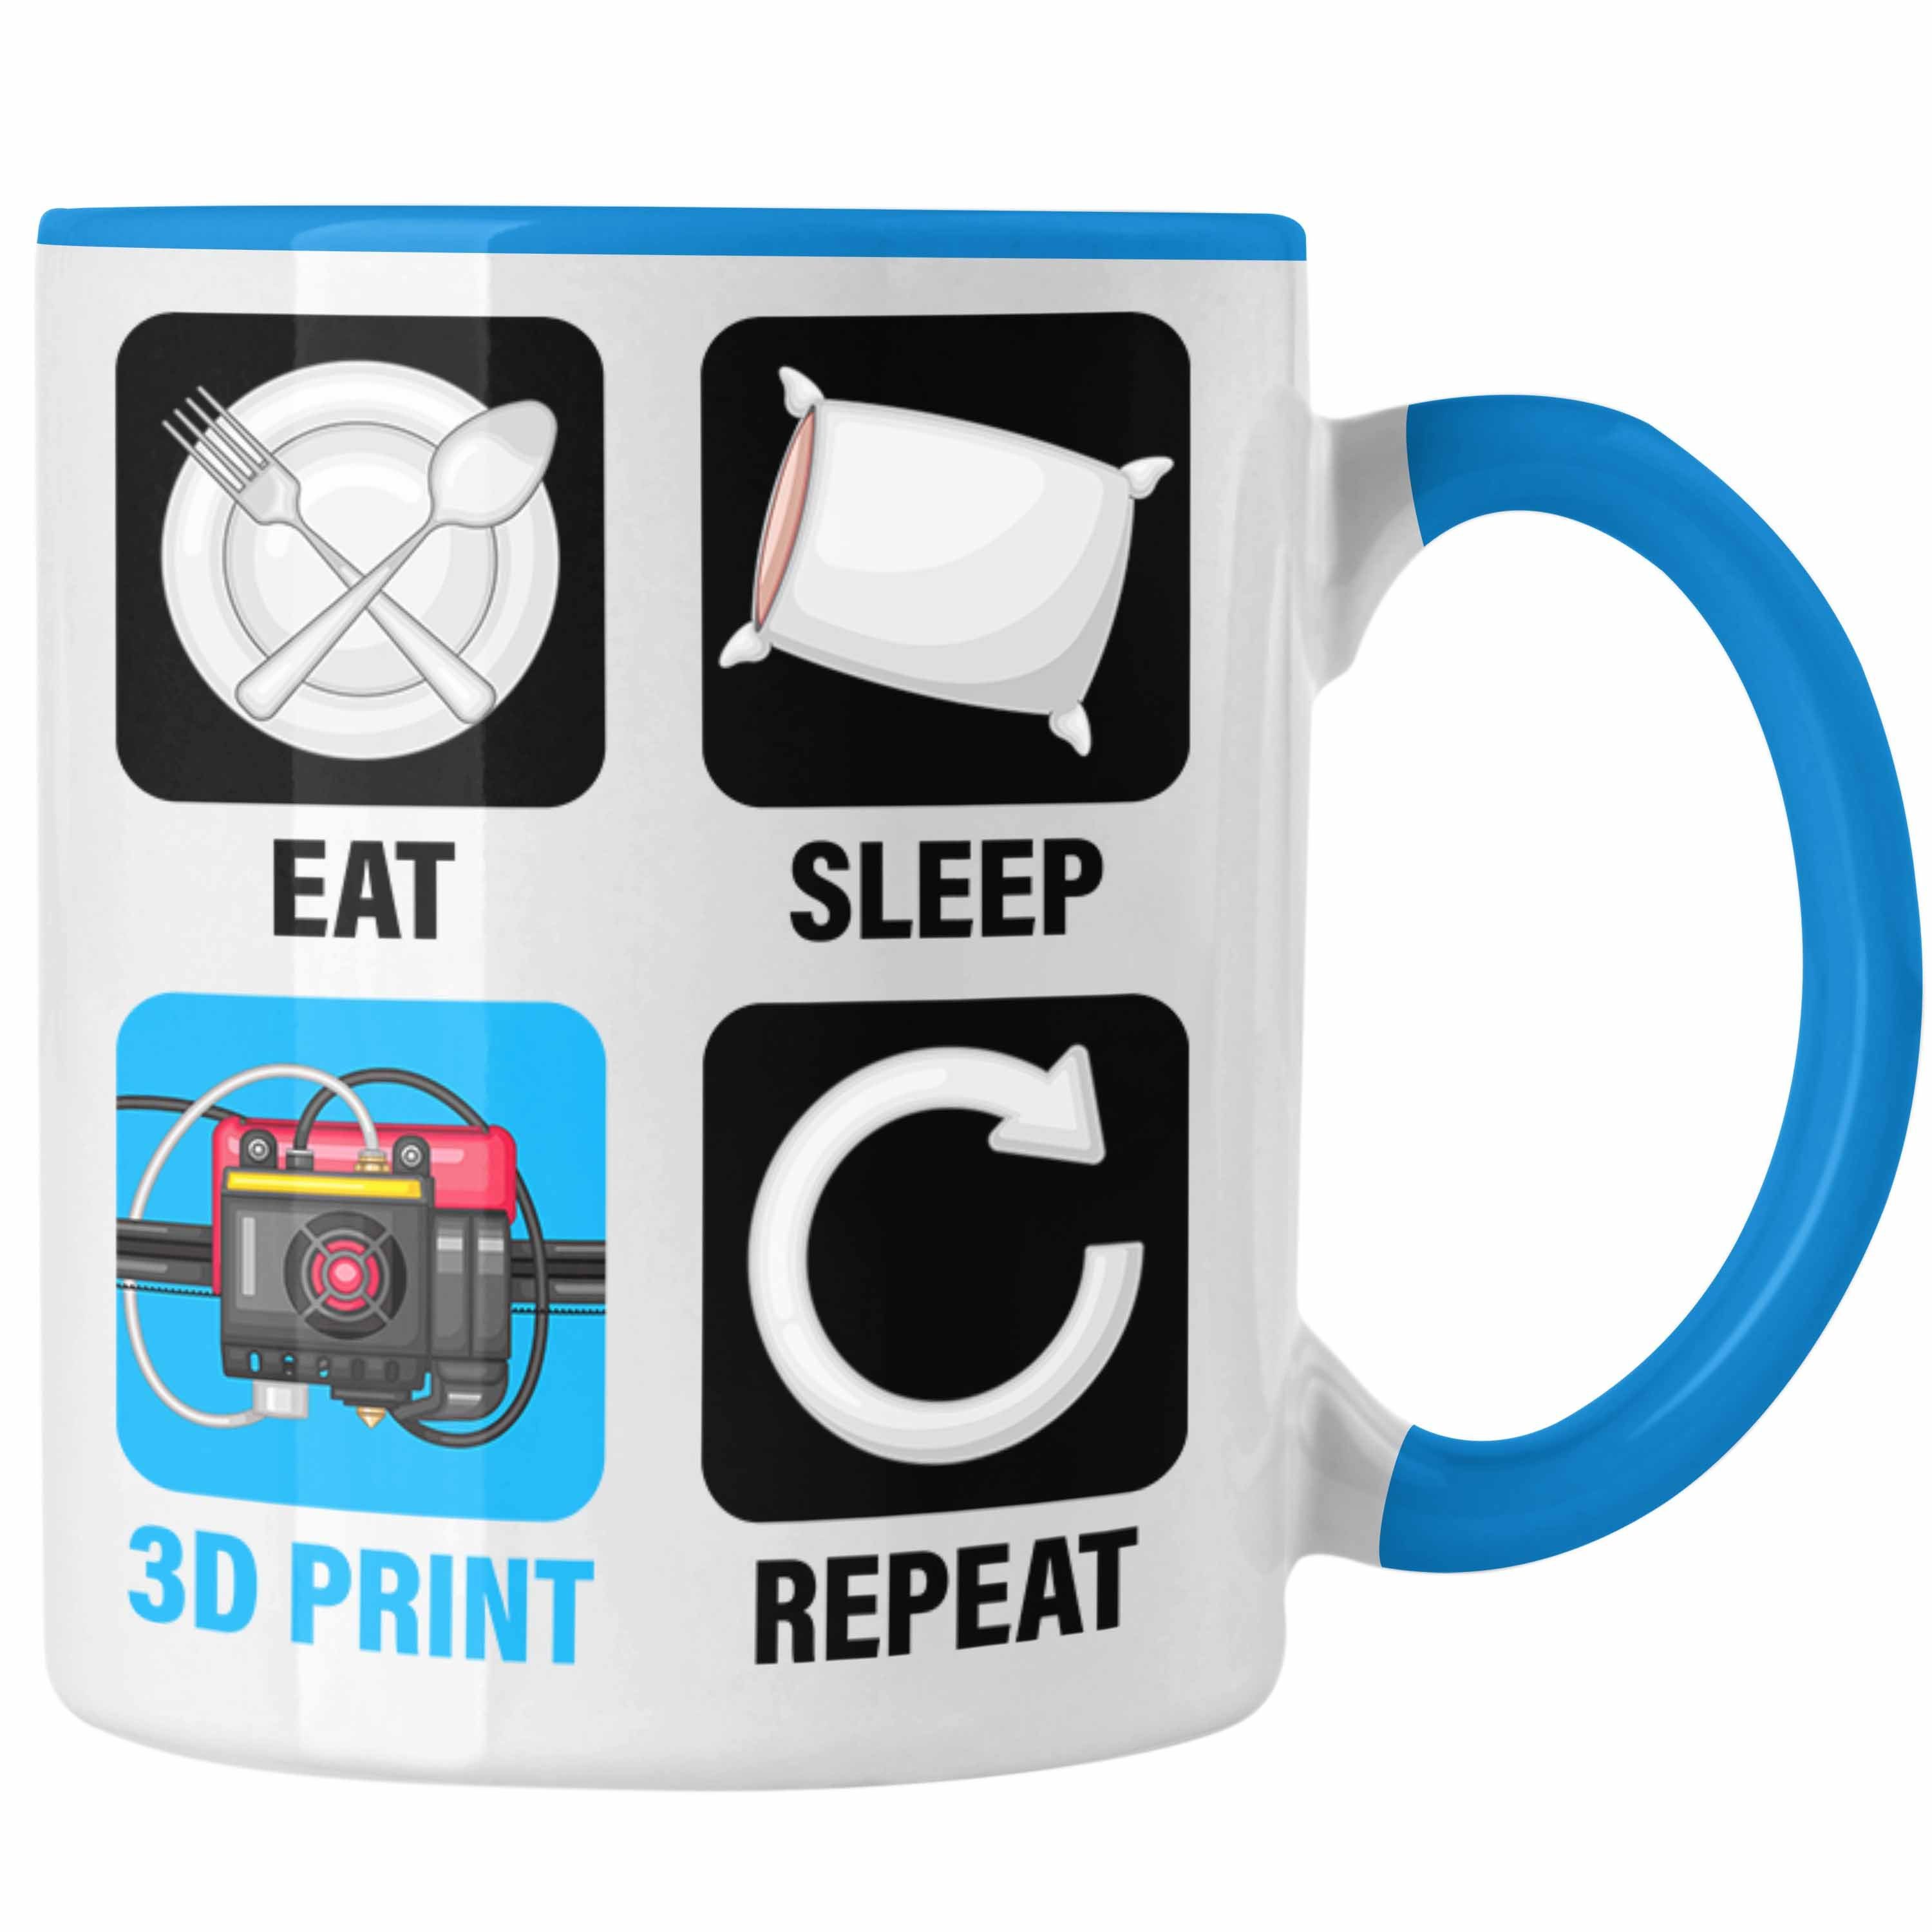 Trendation Eat für Geschenk 3D 3D Printing Mä 3D Print Repeat Sleep Drucker Tasse Tasse Blau